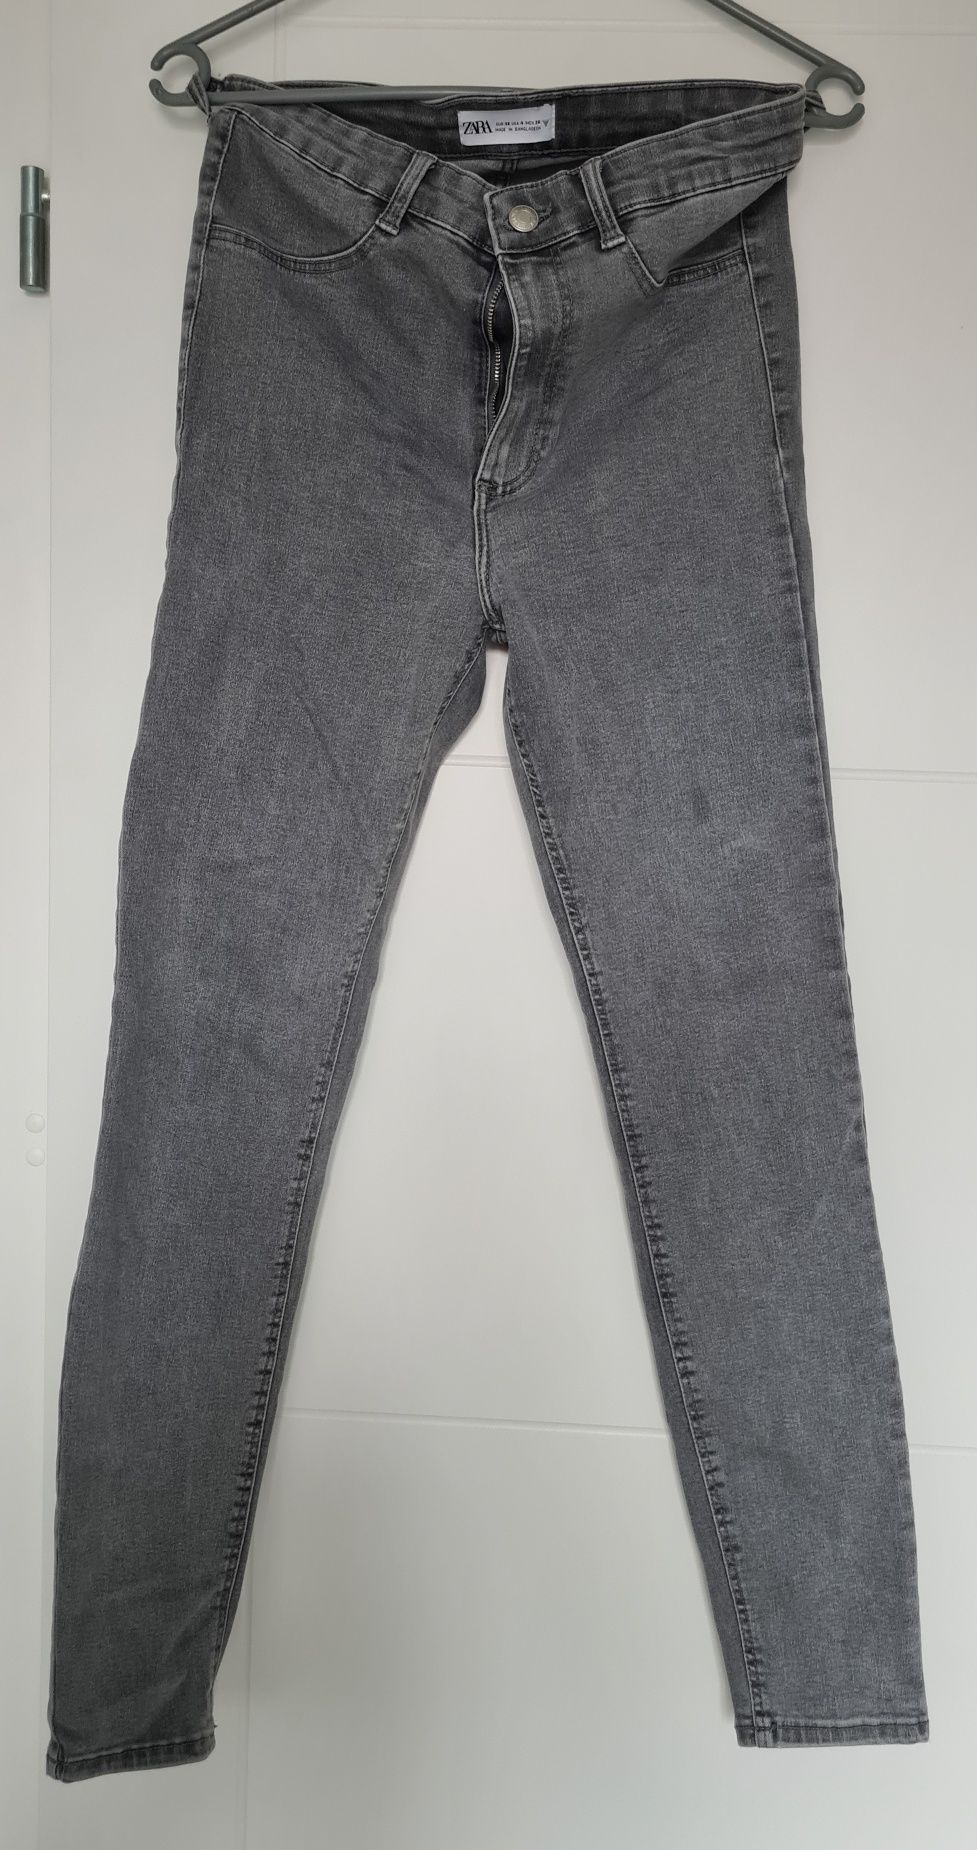 Spodnie jeansy skinny fit jegginsy szare z wysokim stanem Zara 36 / S